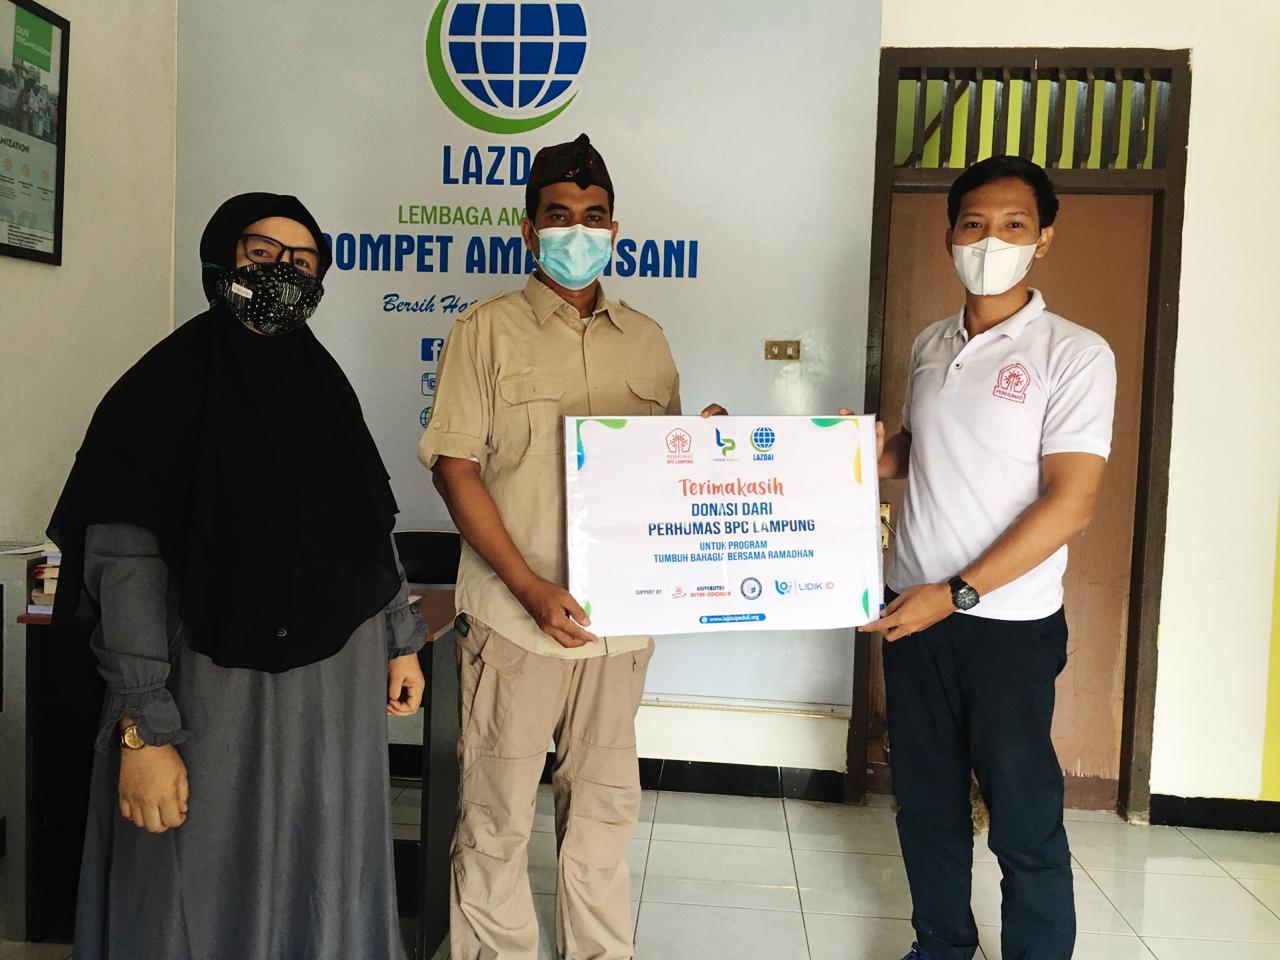 BPC Perhumas Lampung Dukung Program Ramadhan Lazdai